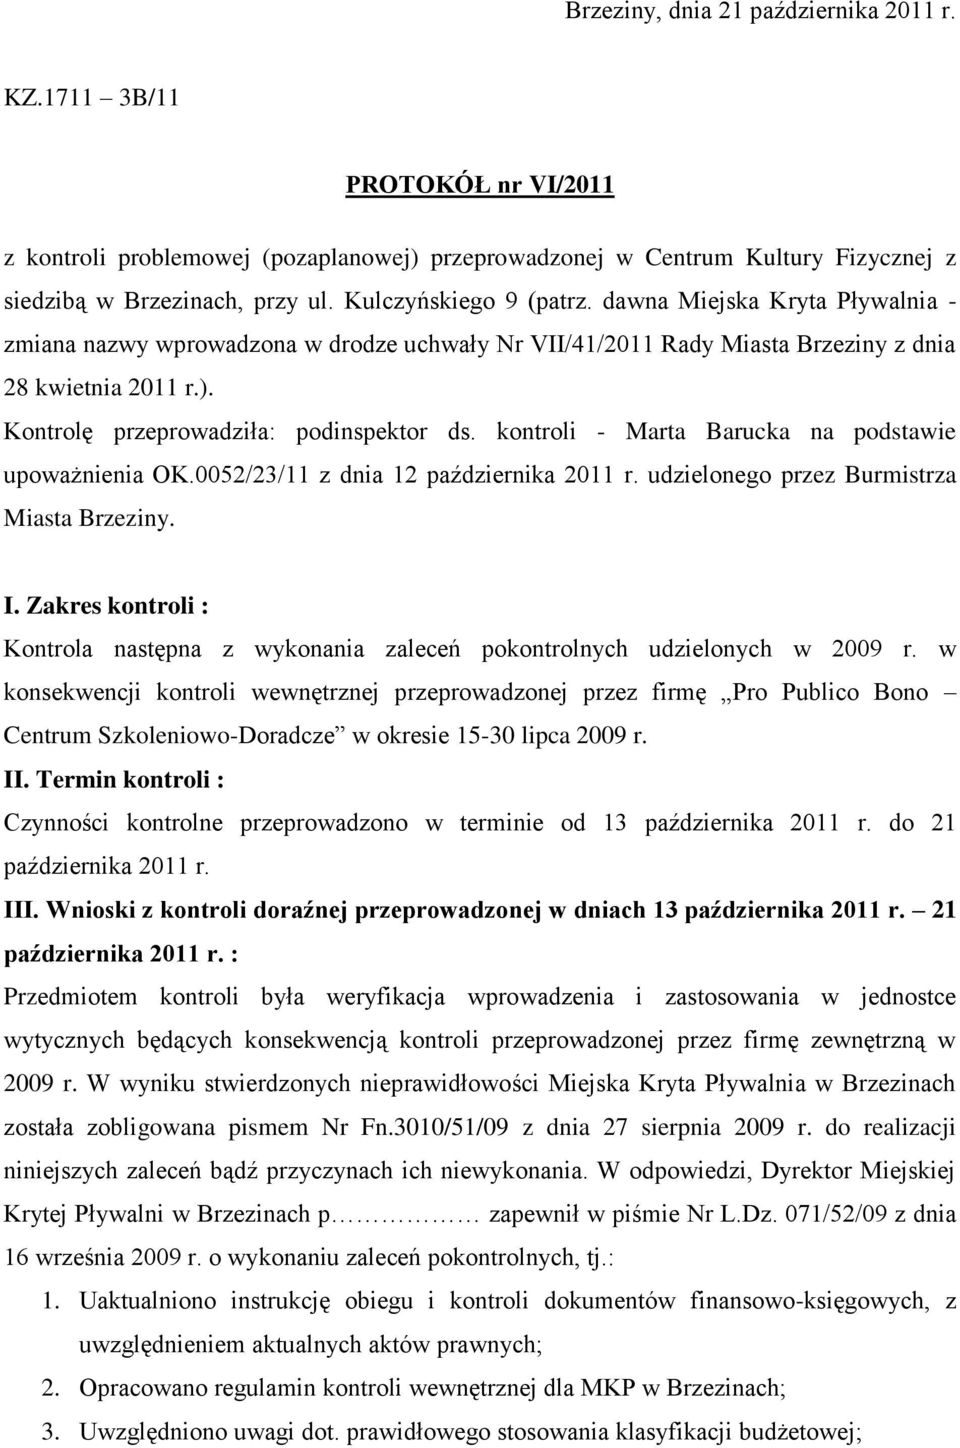 Kontrolę przeprowadziła: podinspektor ds. kontroli - Marta Barucka na podstawie upoważnienia OK.0052/23/11 z dnia 12 października 2011 r. udzielonego przez Burmistrza Miasta Brzeziny. I.